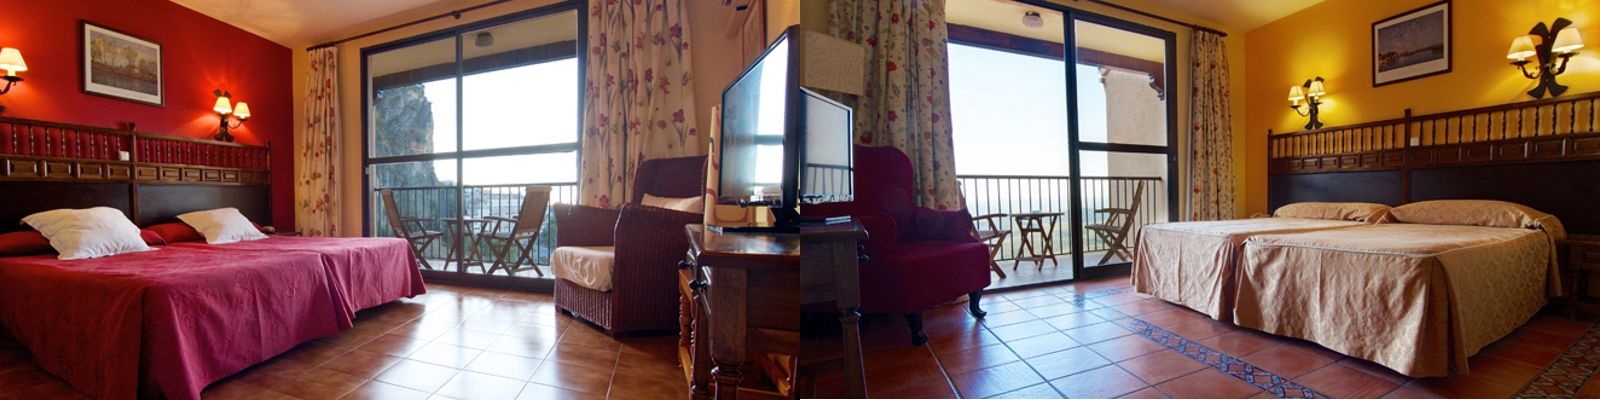 Oferta hotel rural en Cazorla